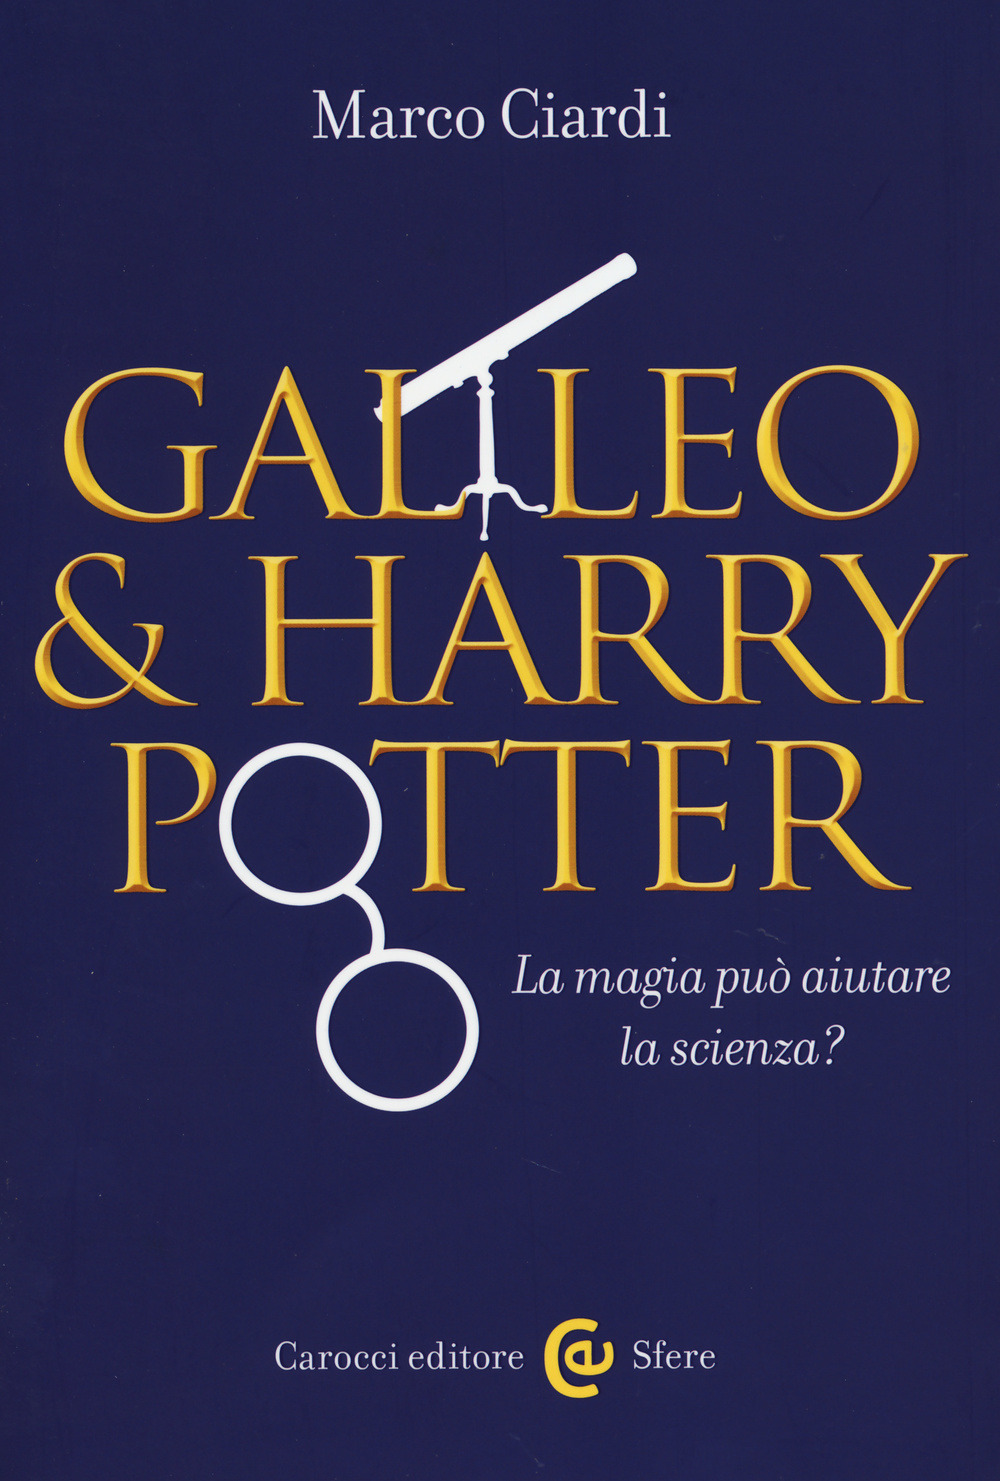 Harry Potter e Galileo Galilei, la strana coppia